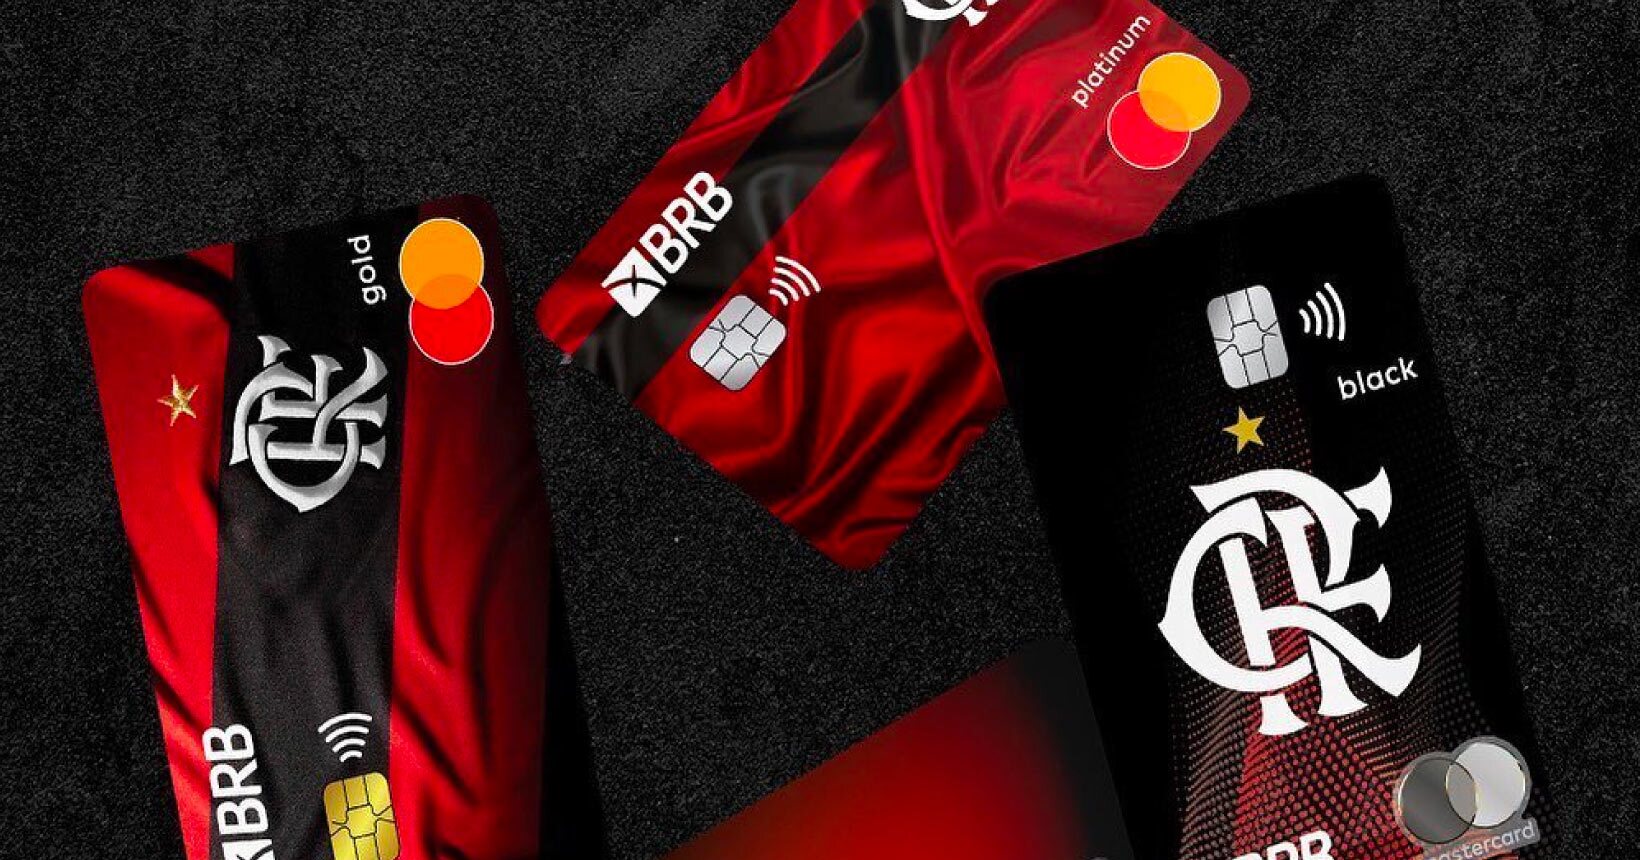 BRB e Flamengo lançam cartão de crédito na bandeira Mastercard